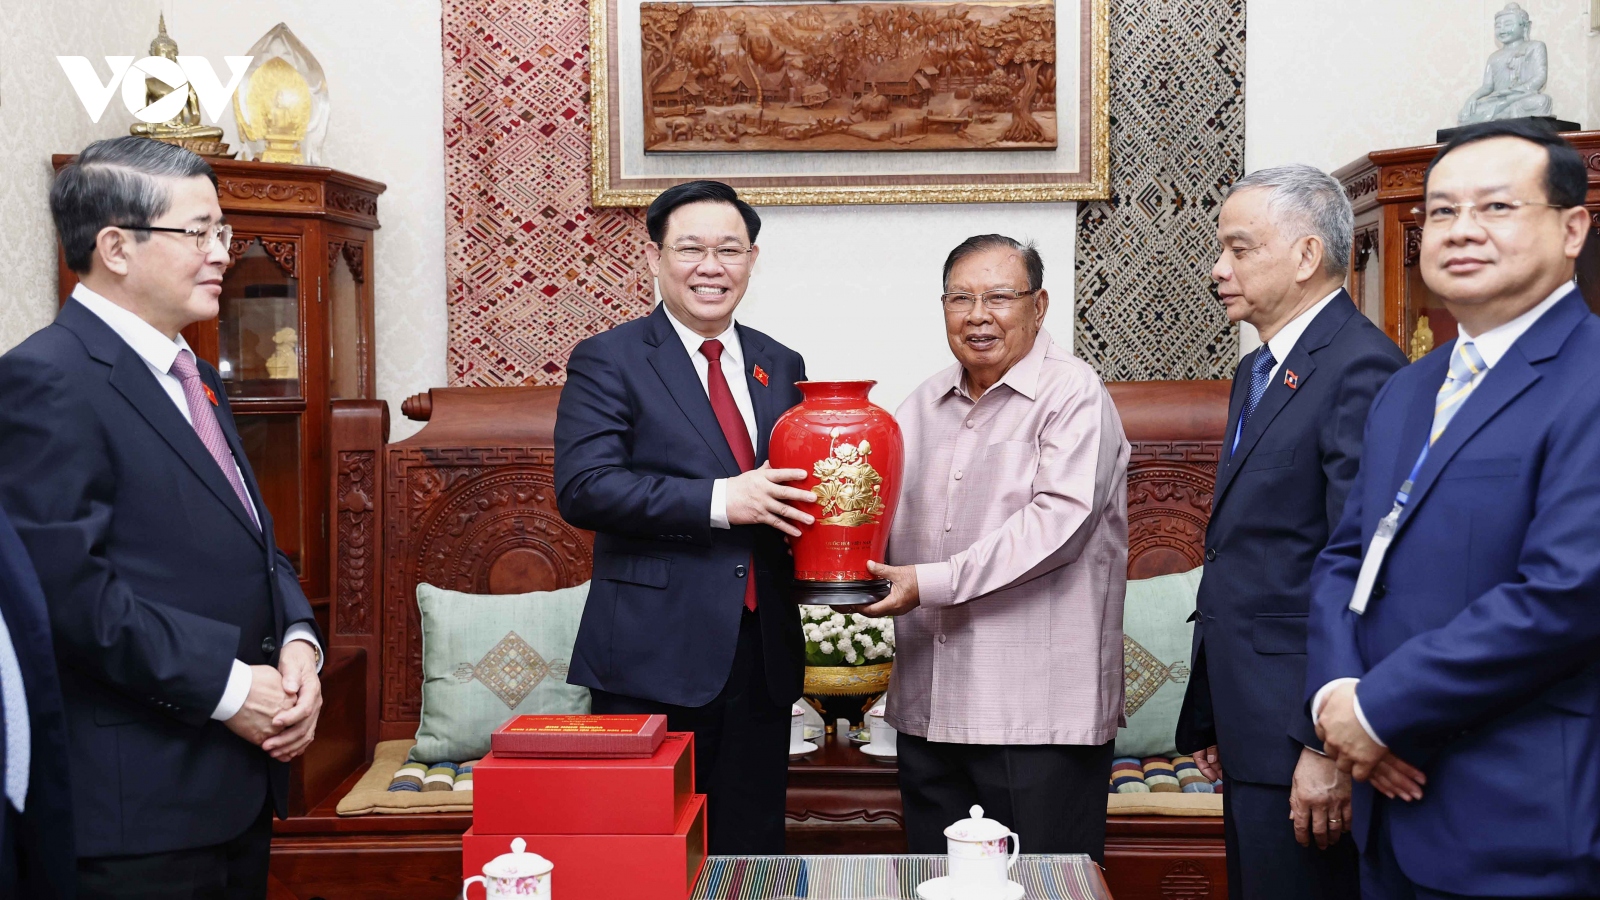 Chủ tịch Quốc hội thăm nguyên Tổng Bí thư, Chủ tịch nước Lào tại nhà riêng